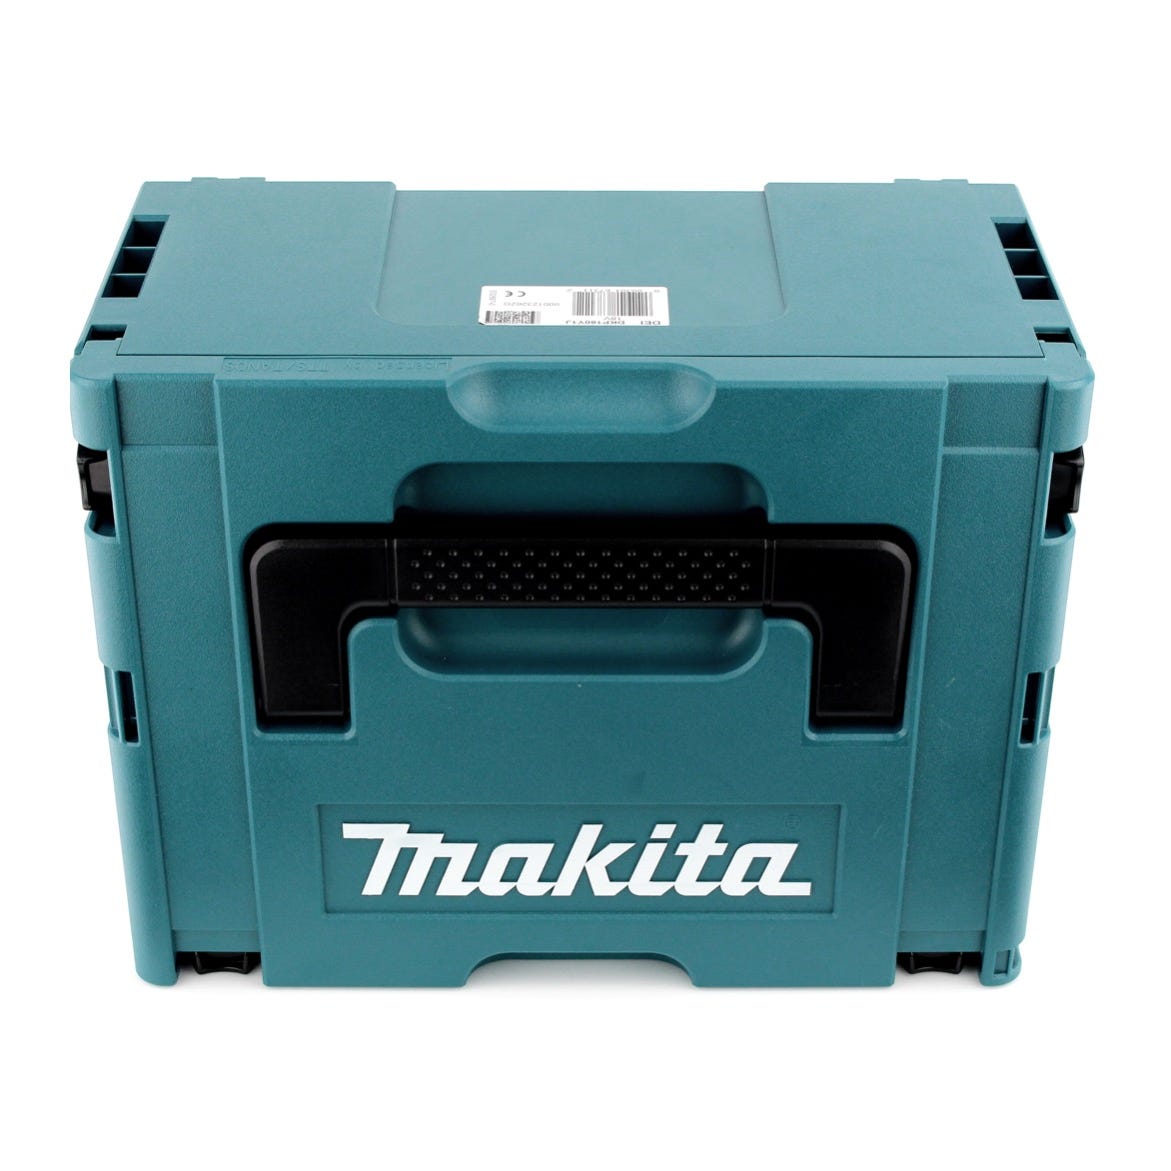 Makita DFR 750 F1J Visseuse à Magazine 18V 45-75mm + 1x Batterie 3,0Ah + Coffret Makpac - sans chargeur 2